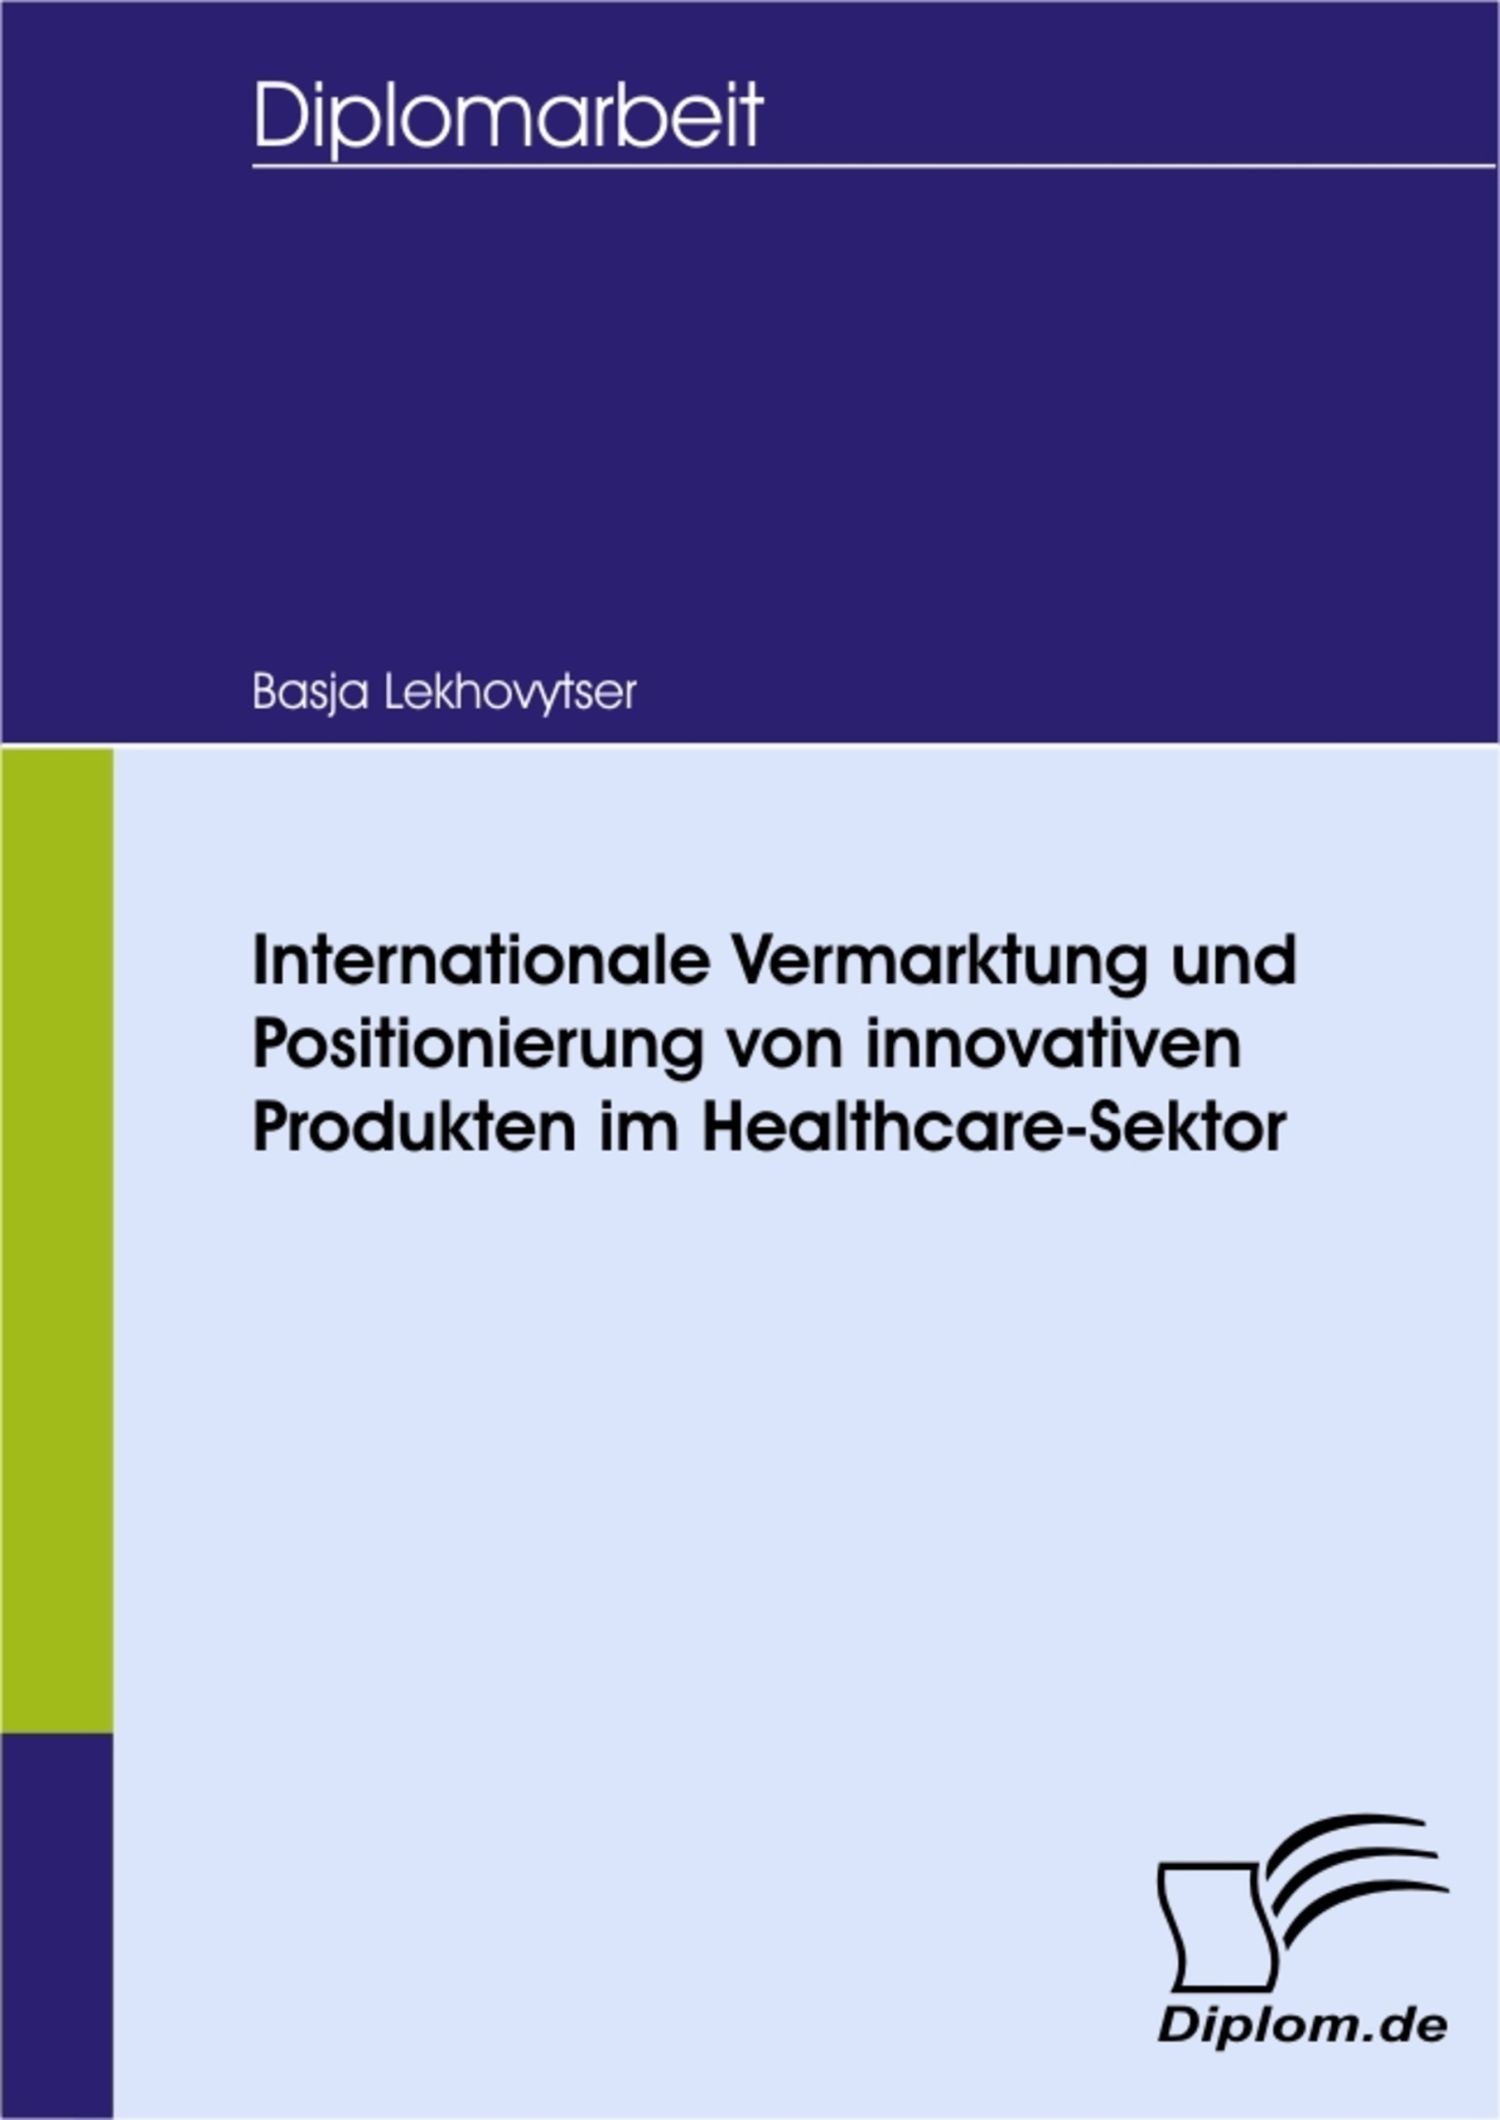 Internationale Vermarktung und Positionierung von innovativen Produkten im Healthcare-Sektor